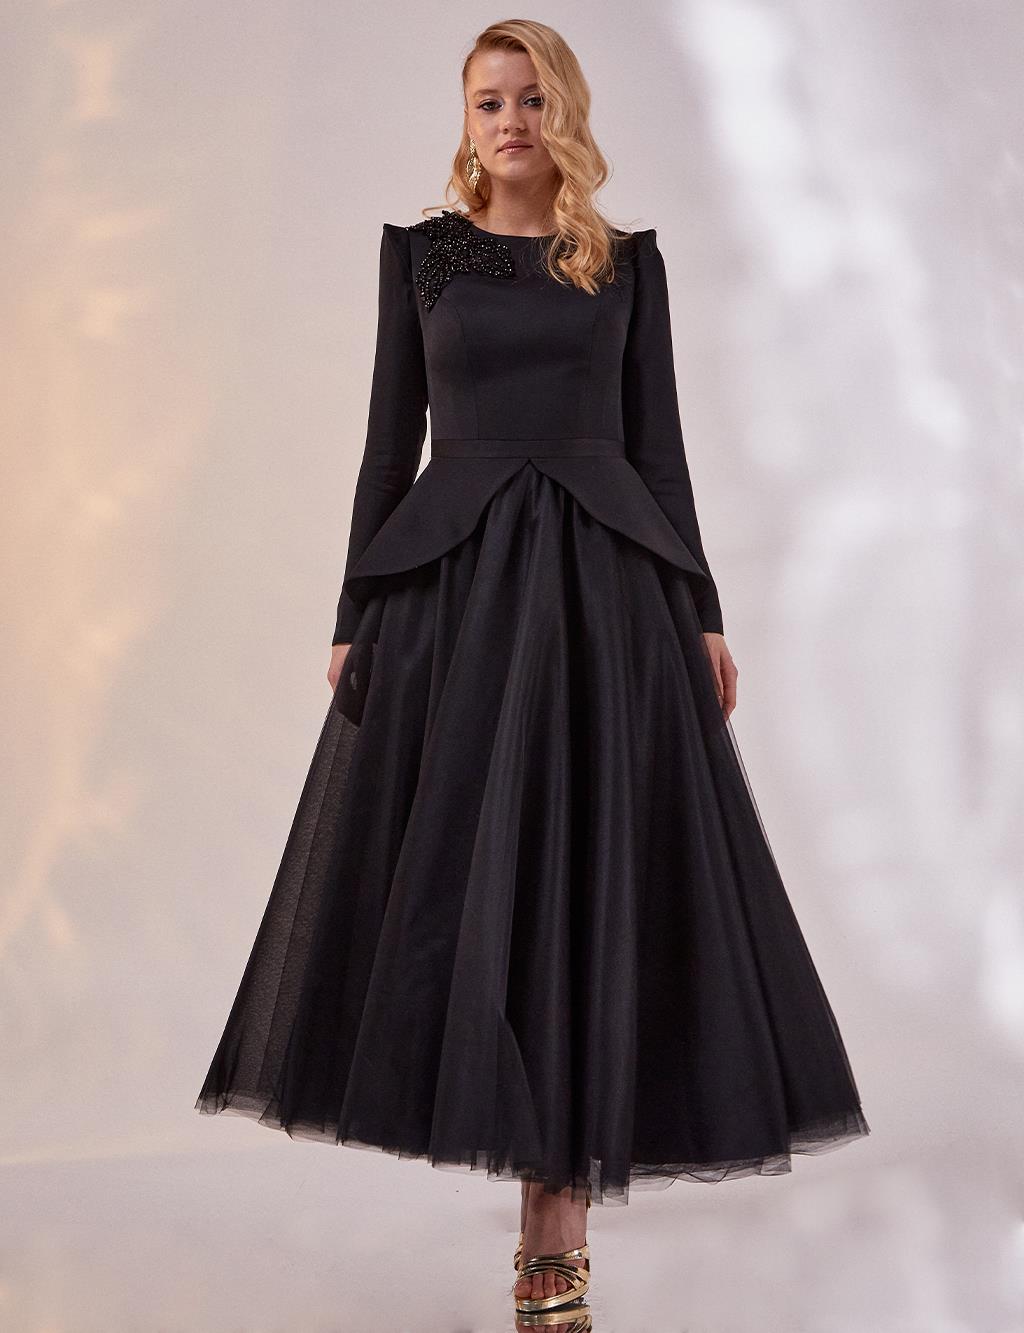 Tulle Skirt Evening Dress Black